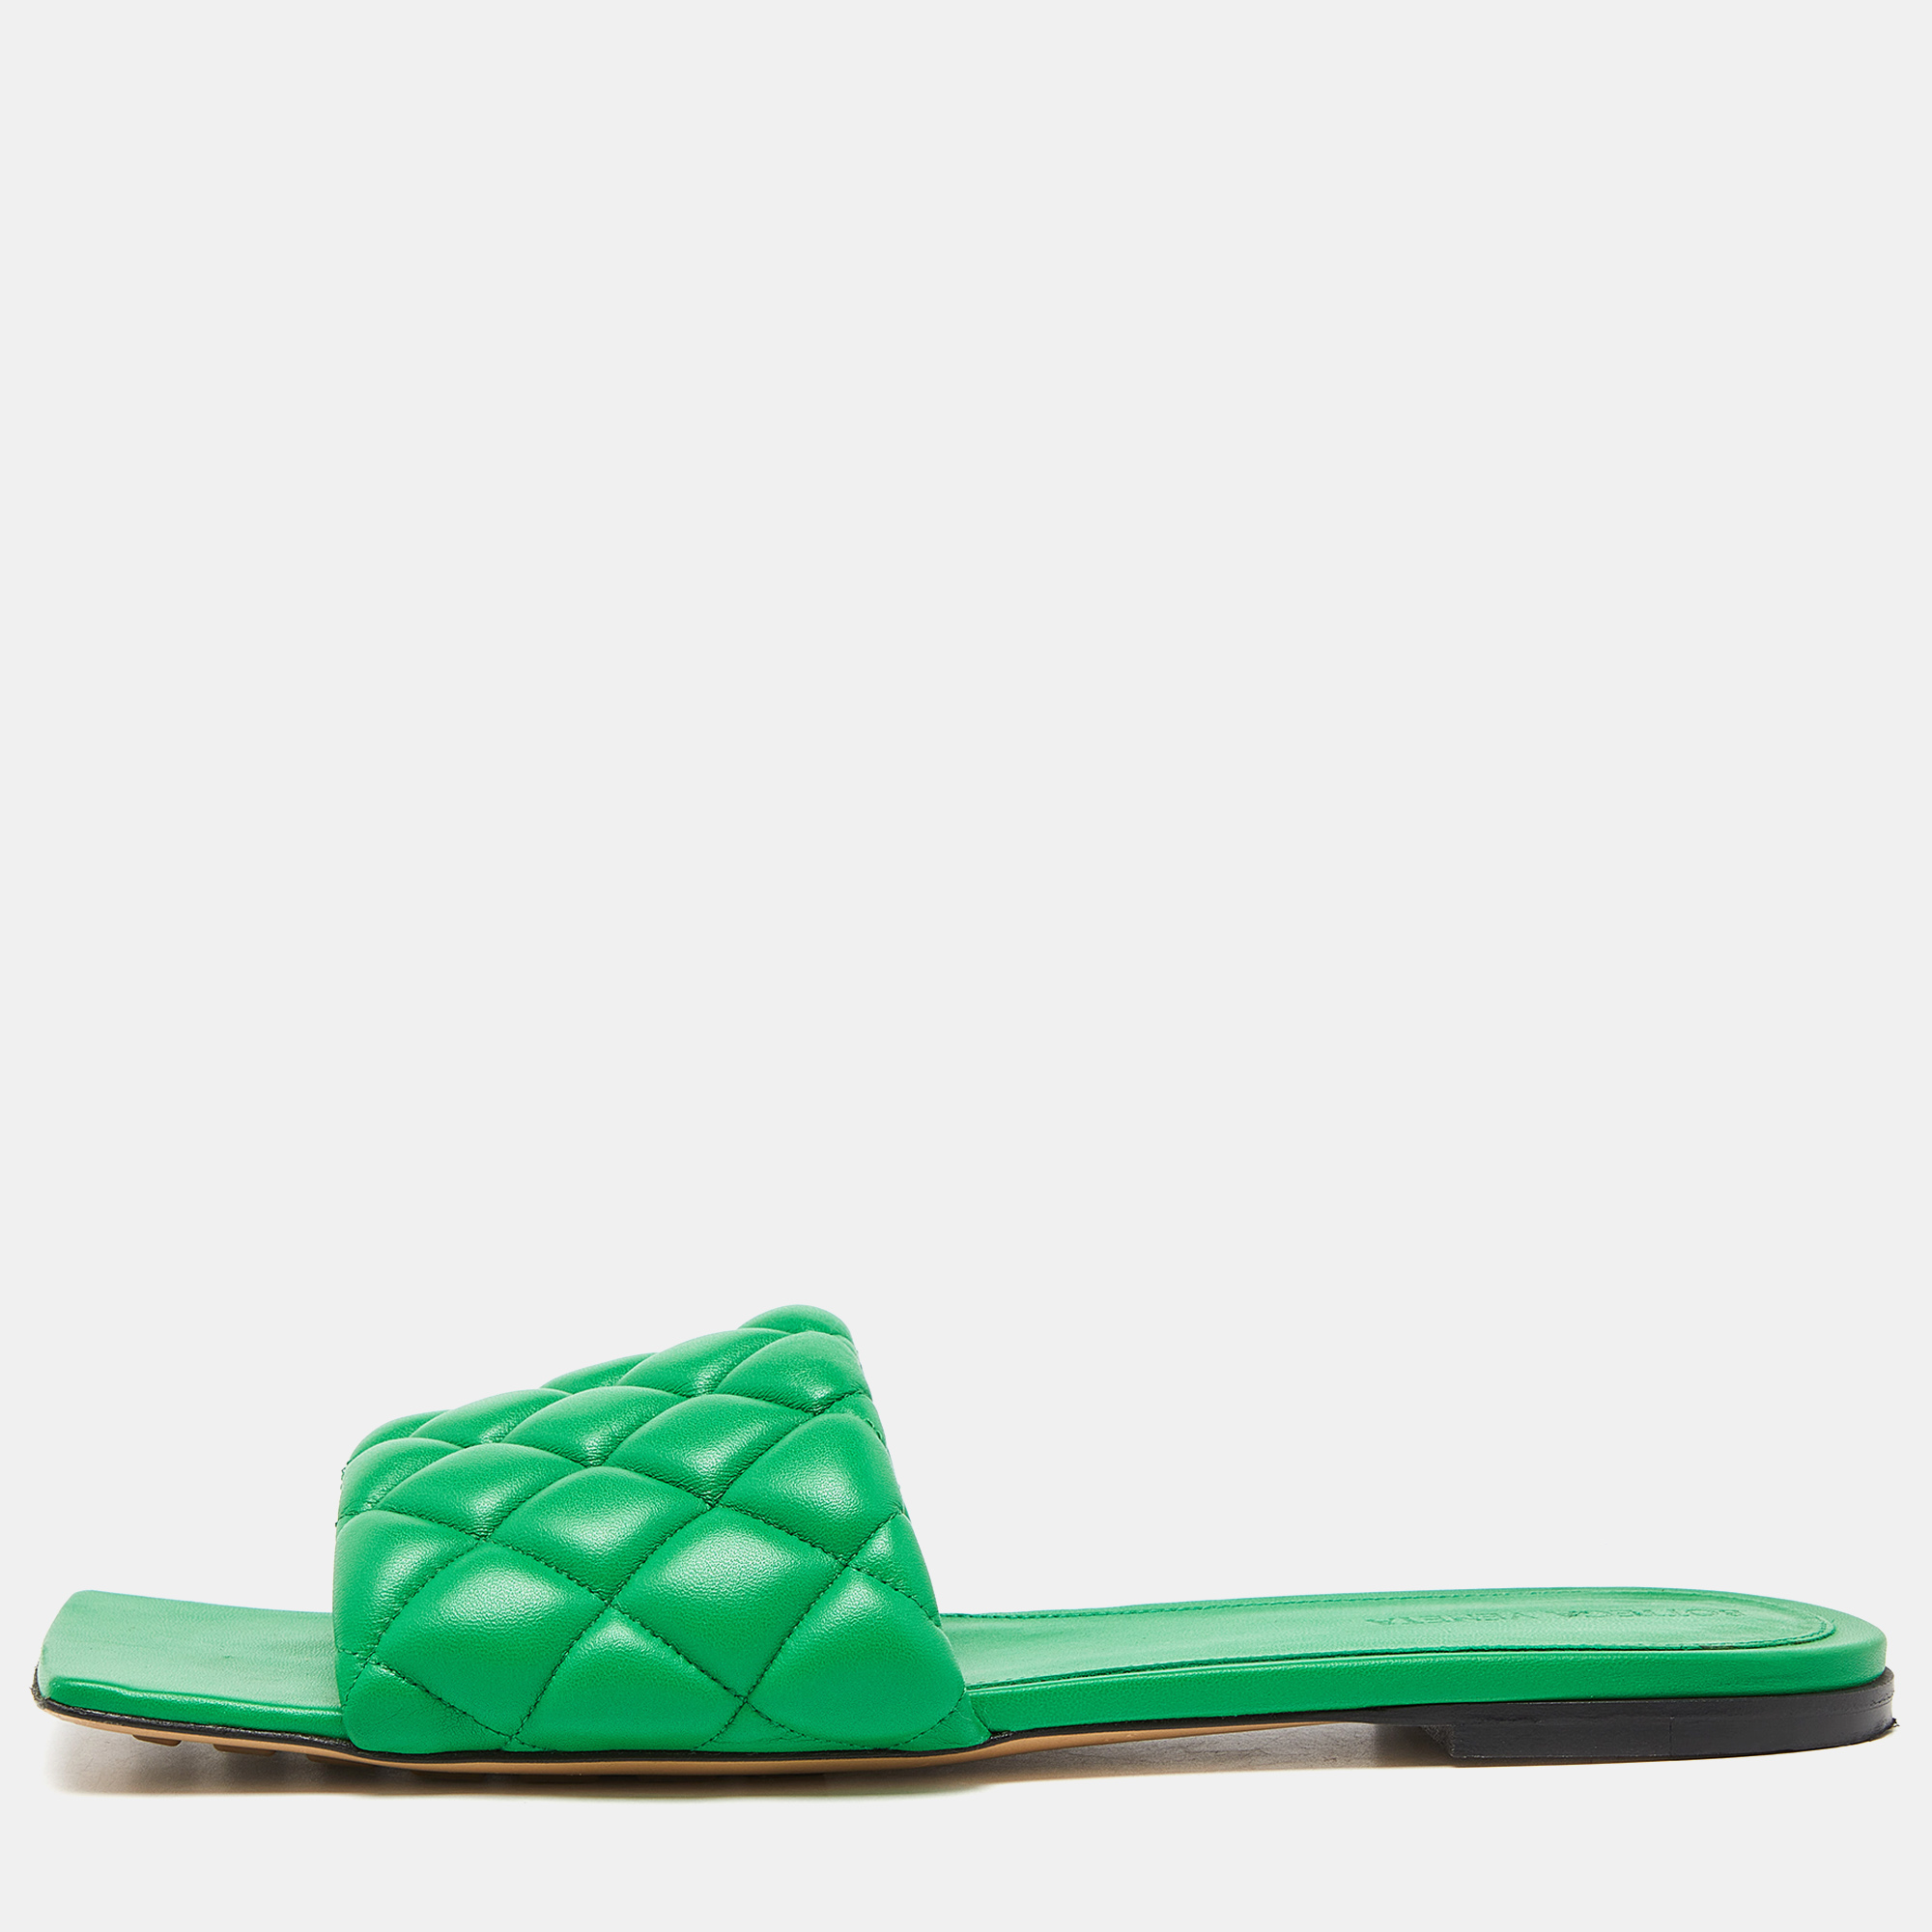 Pre-owned Bottega Veneta Green Padded Leather Flat Slides Size 41